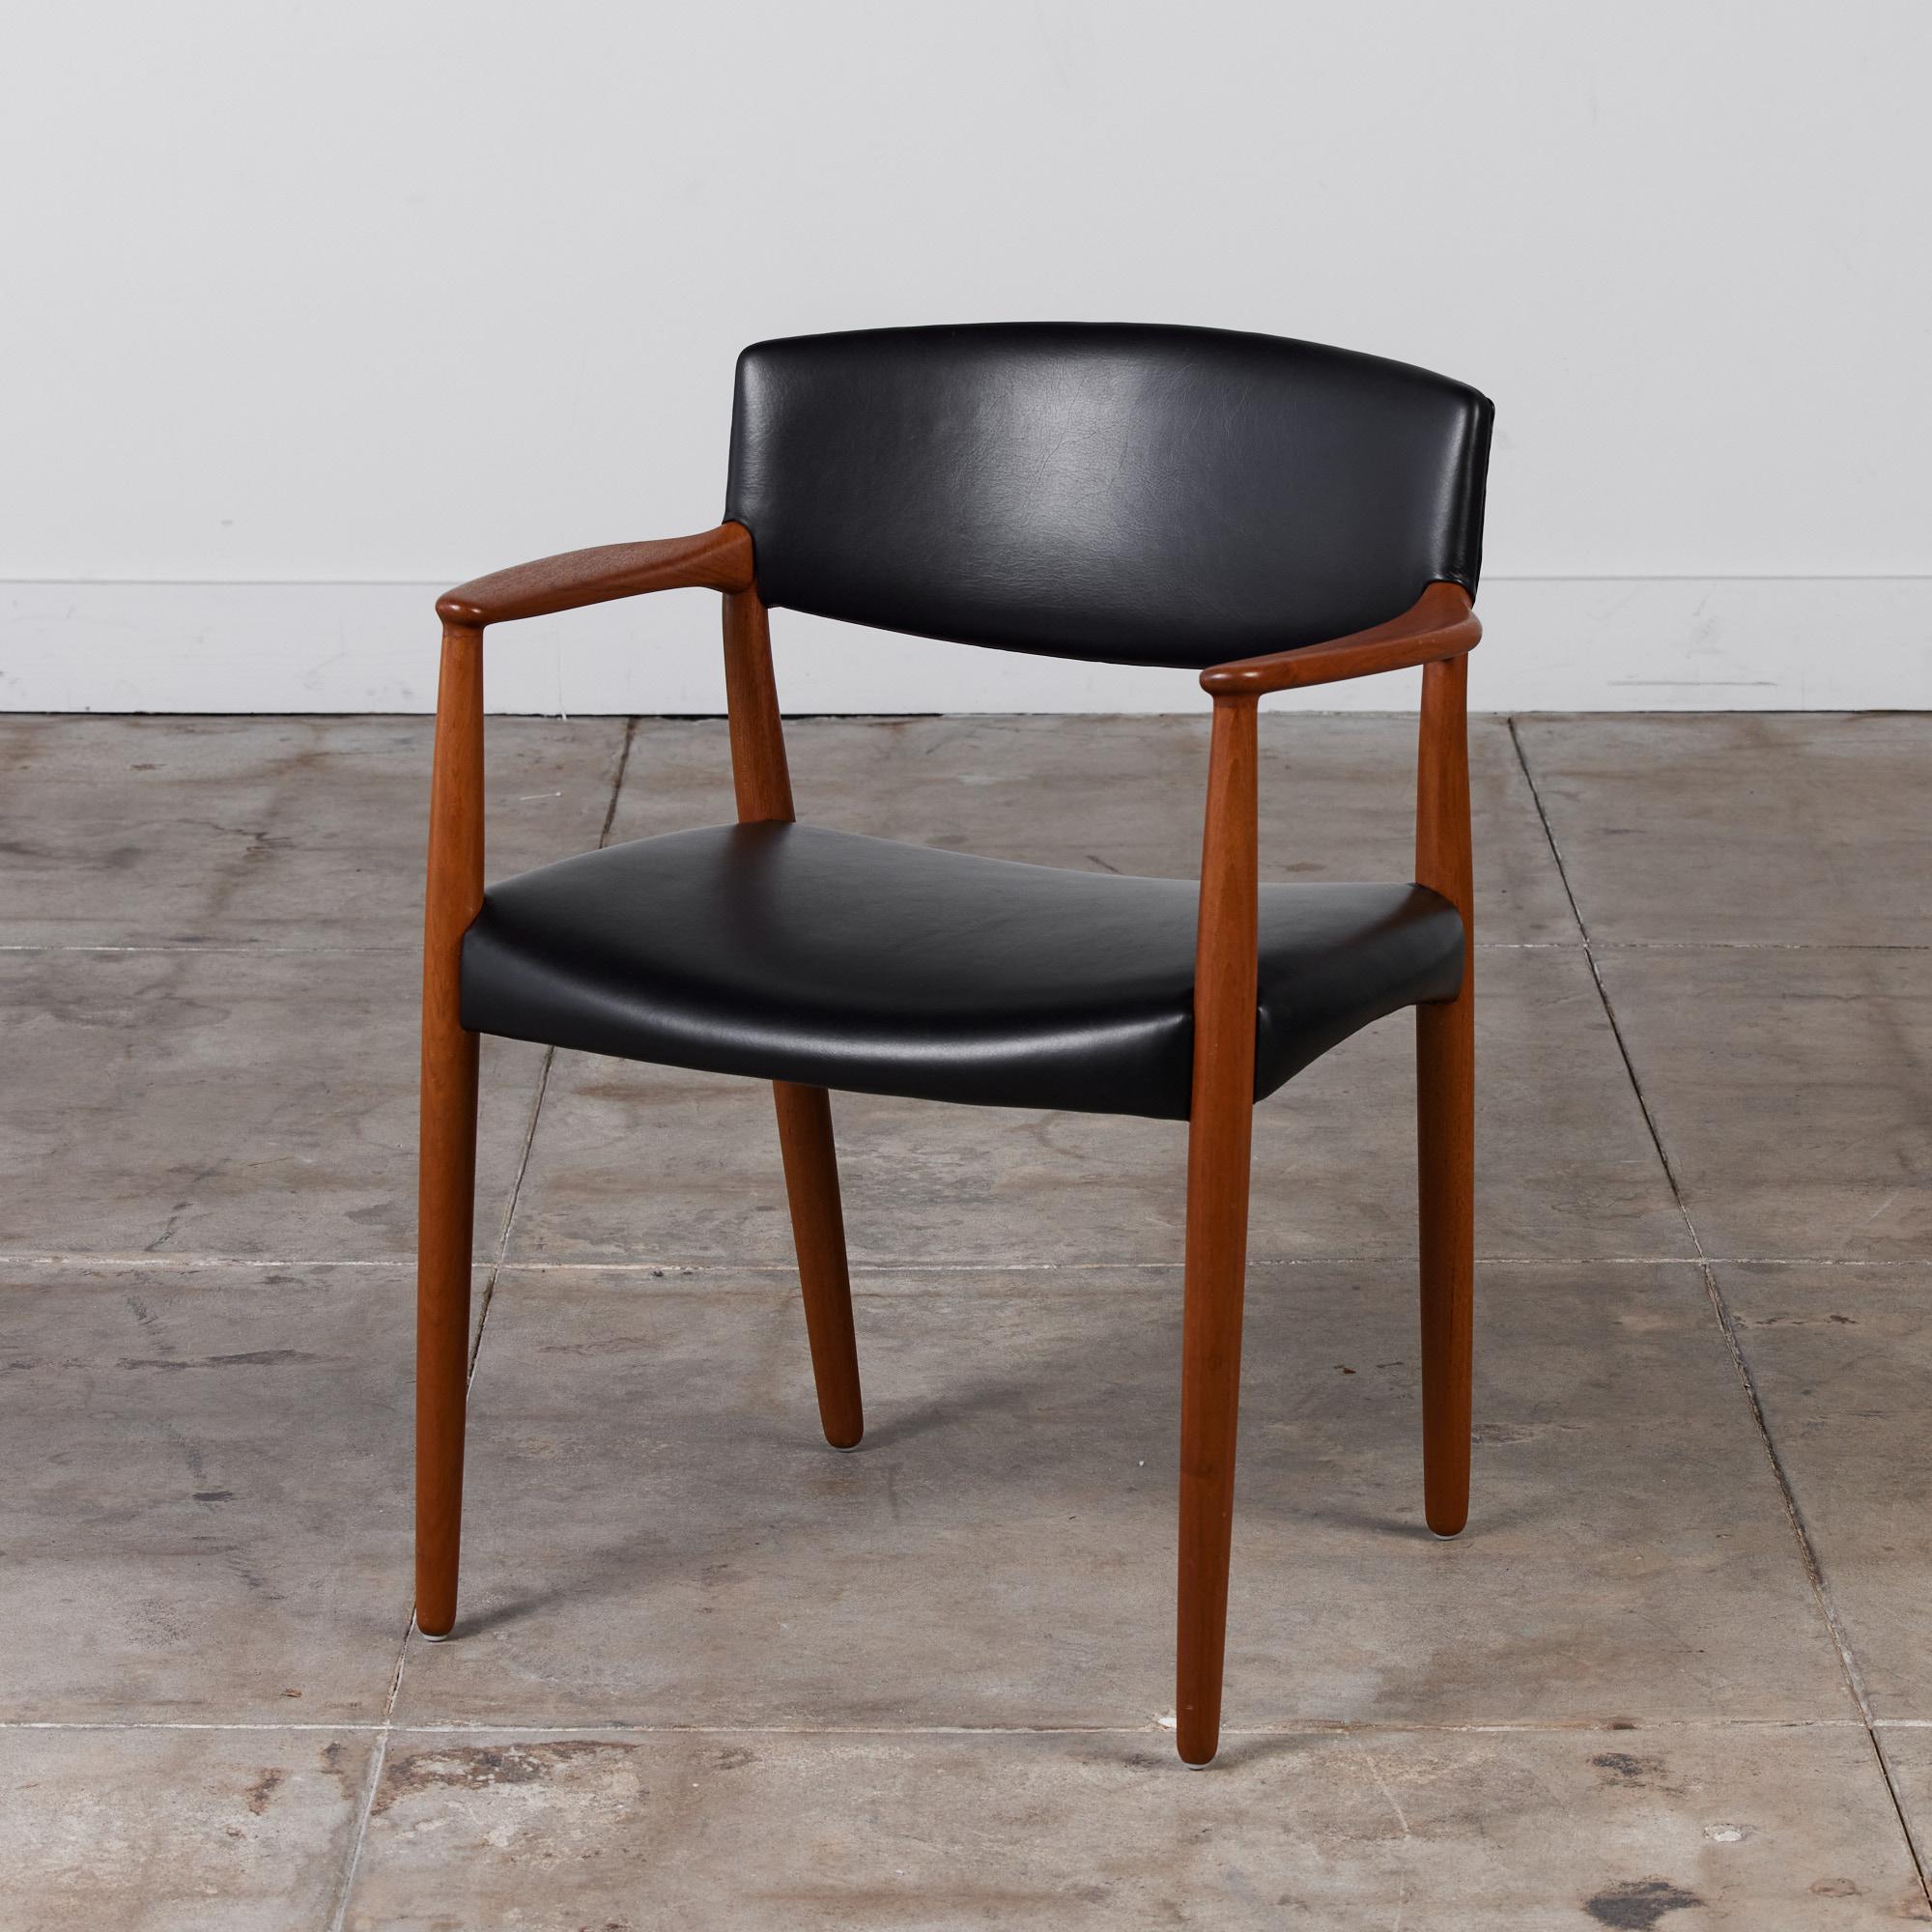 Seltener Sessel von Ejner Larsen & Aksel Bender Madsen für Willy Beck, ca. 1950er Jahre, Dänemark. Der Stuhl hat einen massiven Teakholzrahmen und eine mit schwarzem Leder gepolsterte breite Sitzfläche und Rückenlehne.

Abmessungen: 25